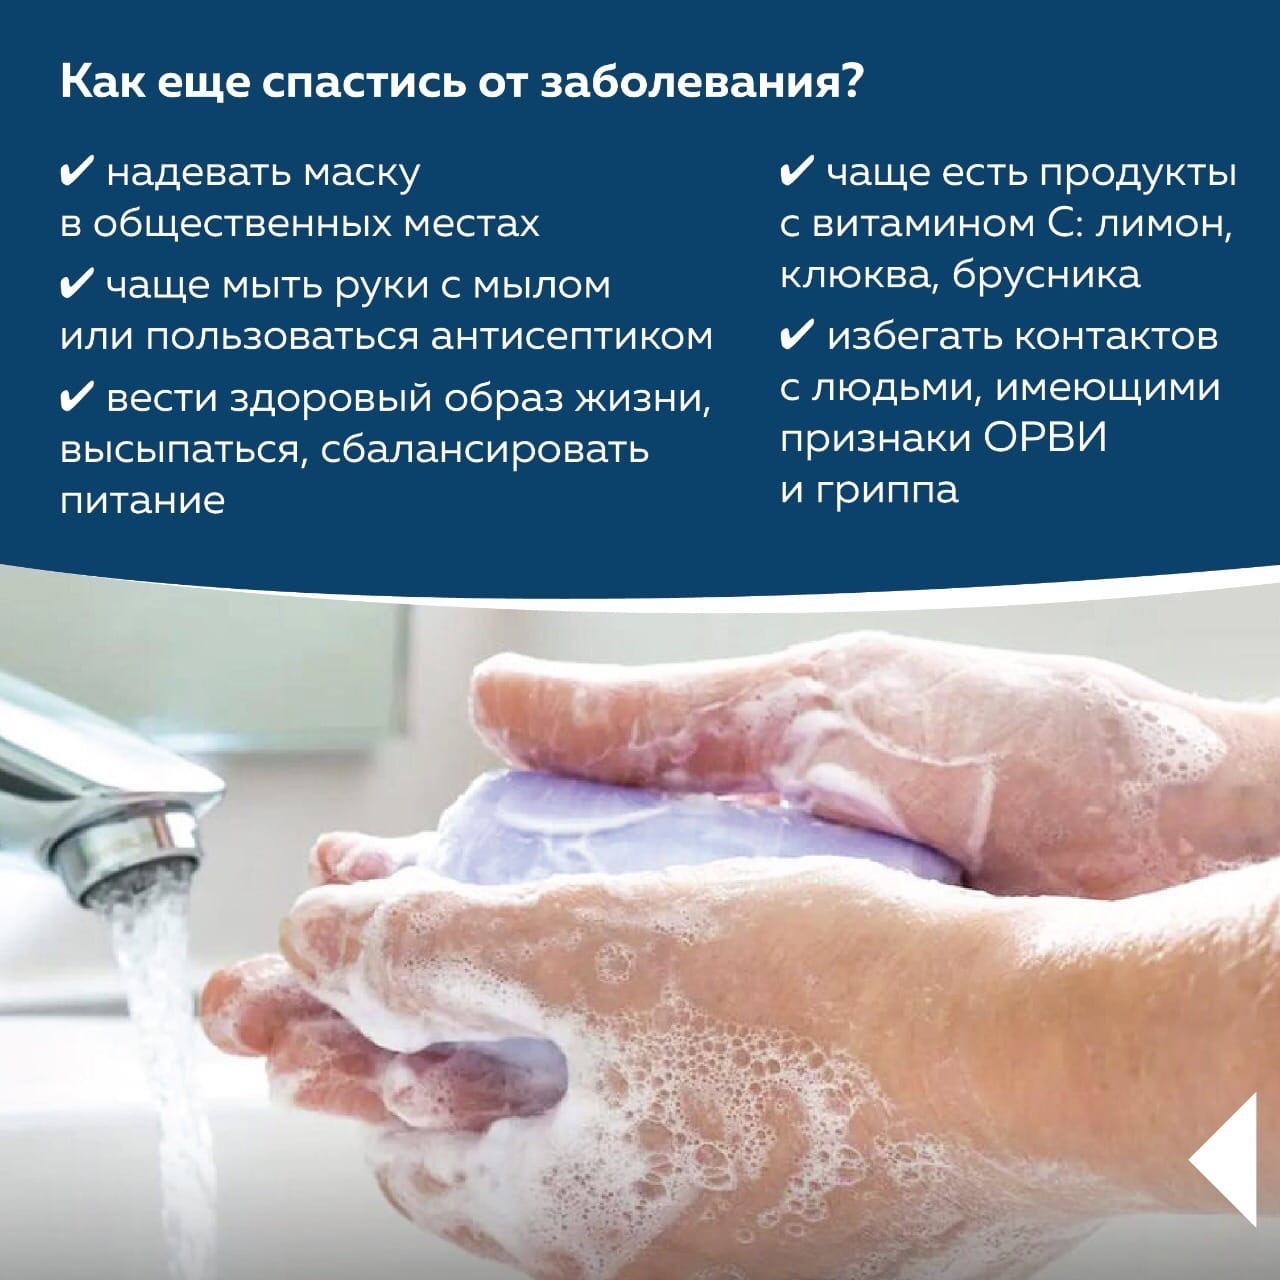 В Башкортостане активно идет кампания по вакцинации от гриппа